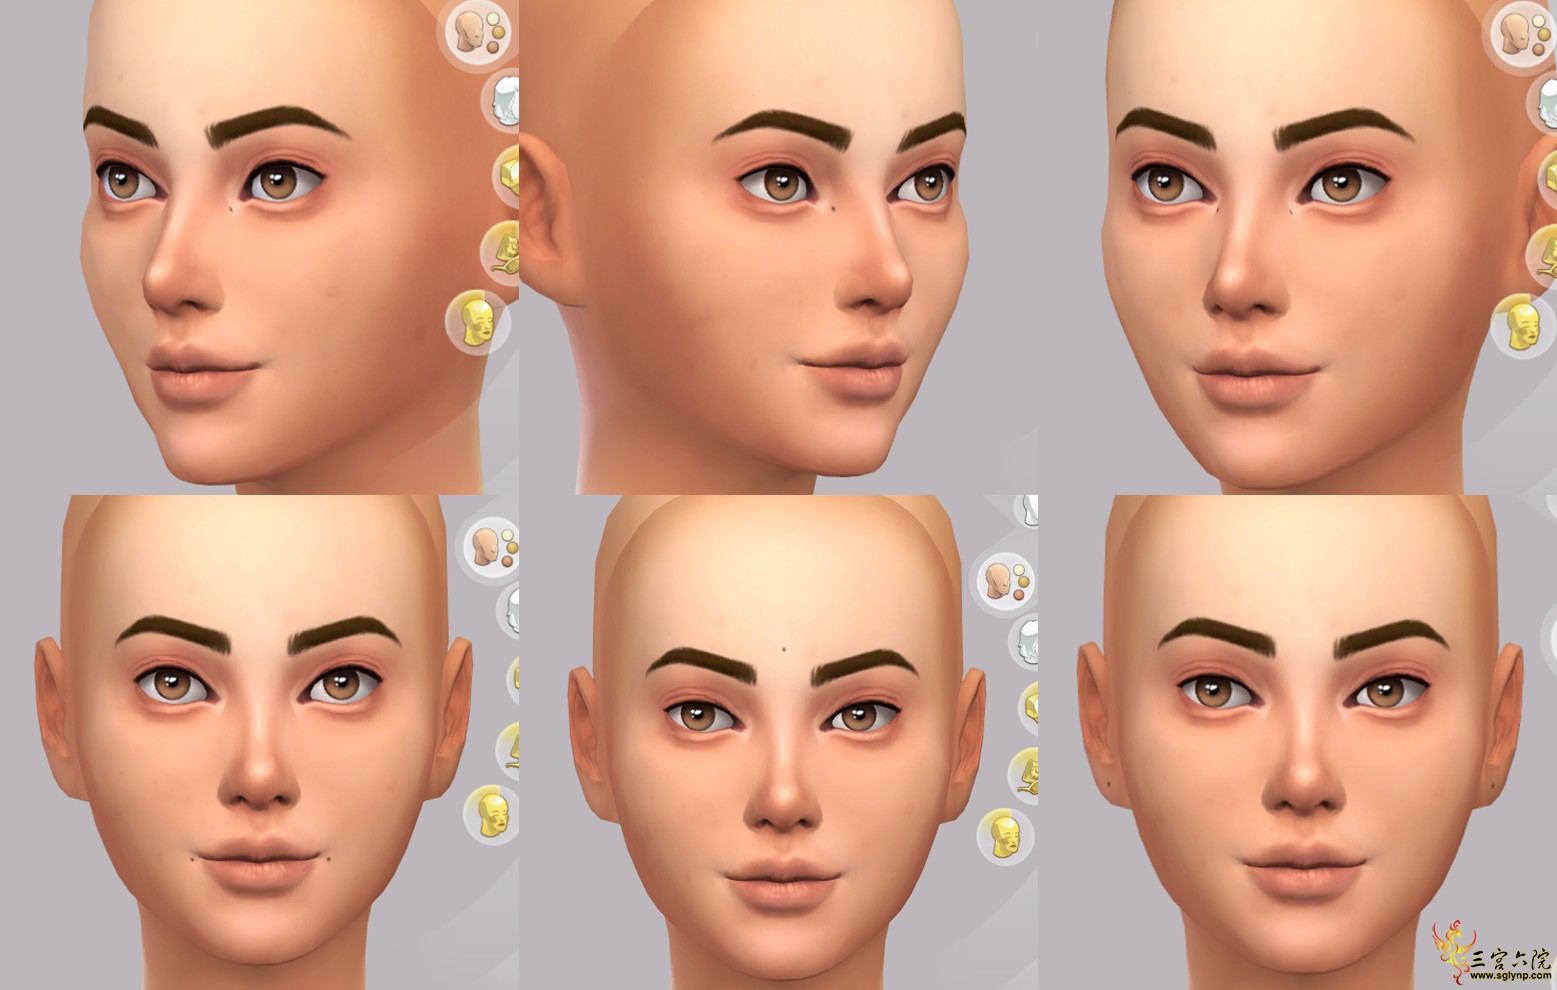 Sims 4 Screenshot 2021.01.14 - 12.50.17.40.png